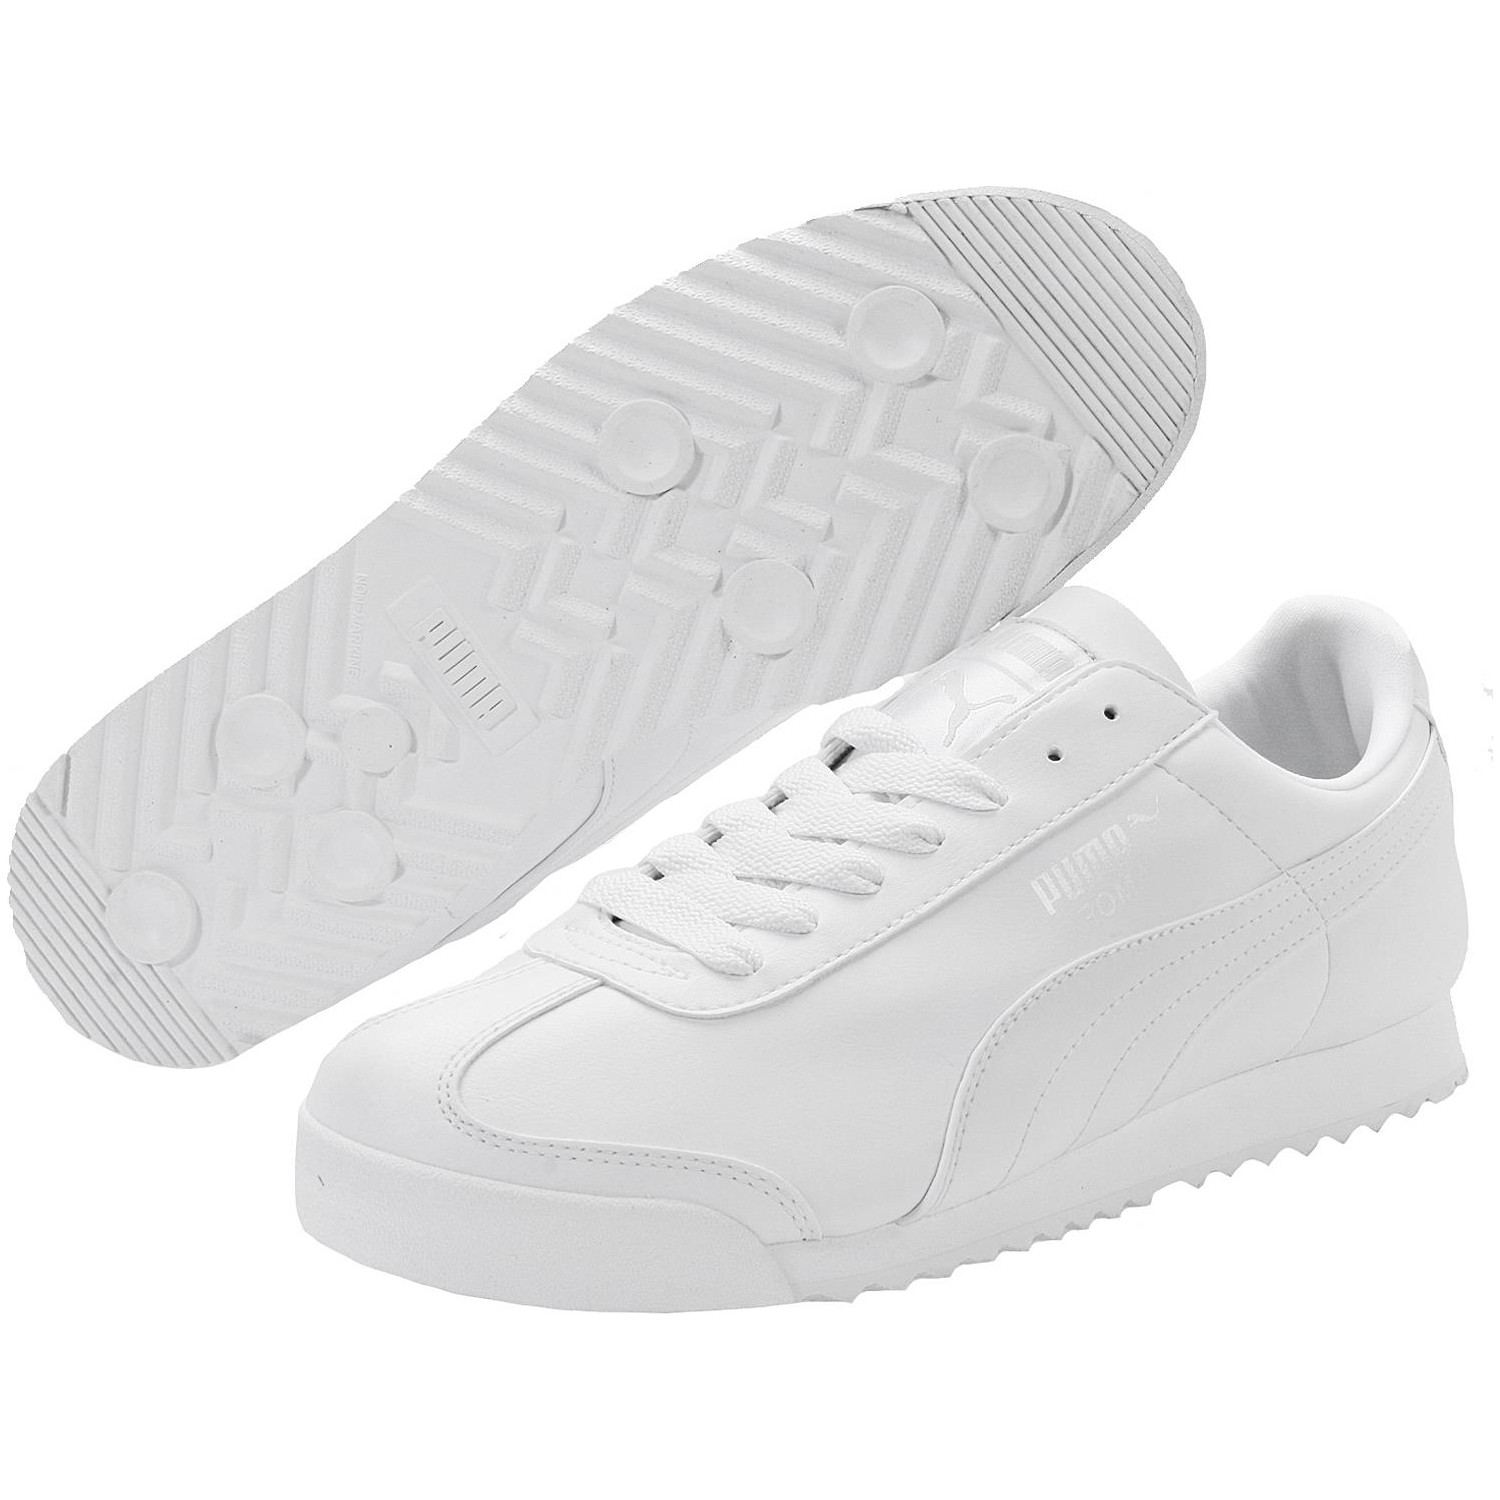 Puma Roma Basic Erkek Beyaz Sneaker Fiyatı - Taksit Seçenekleri